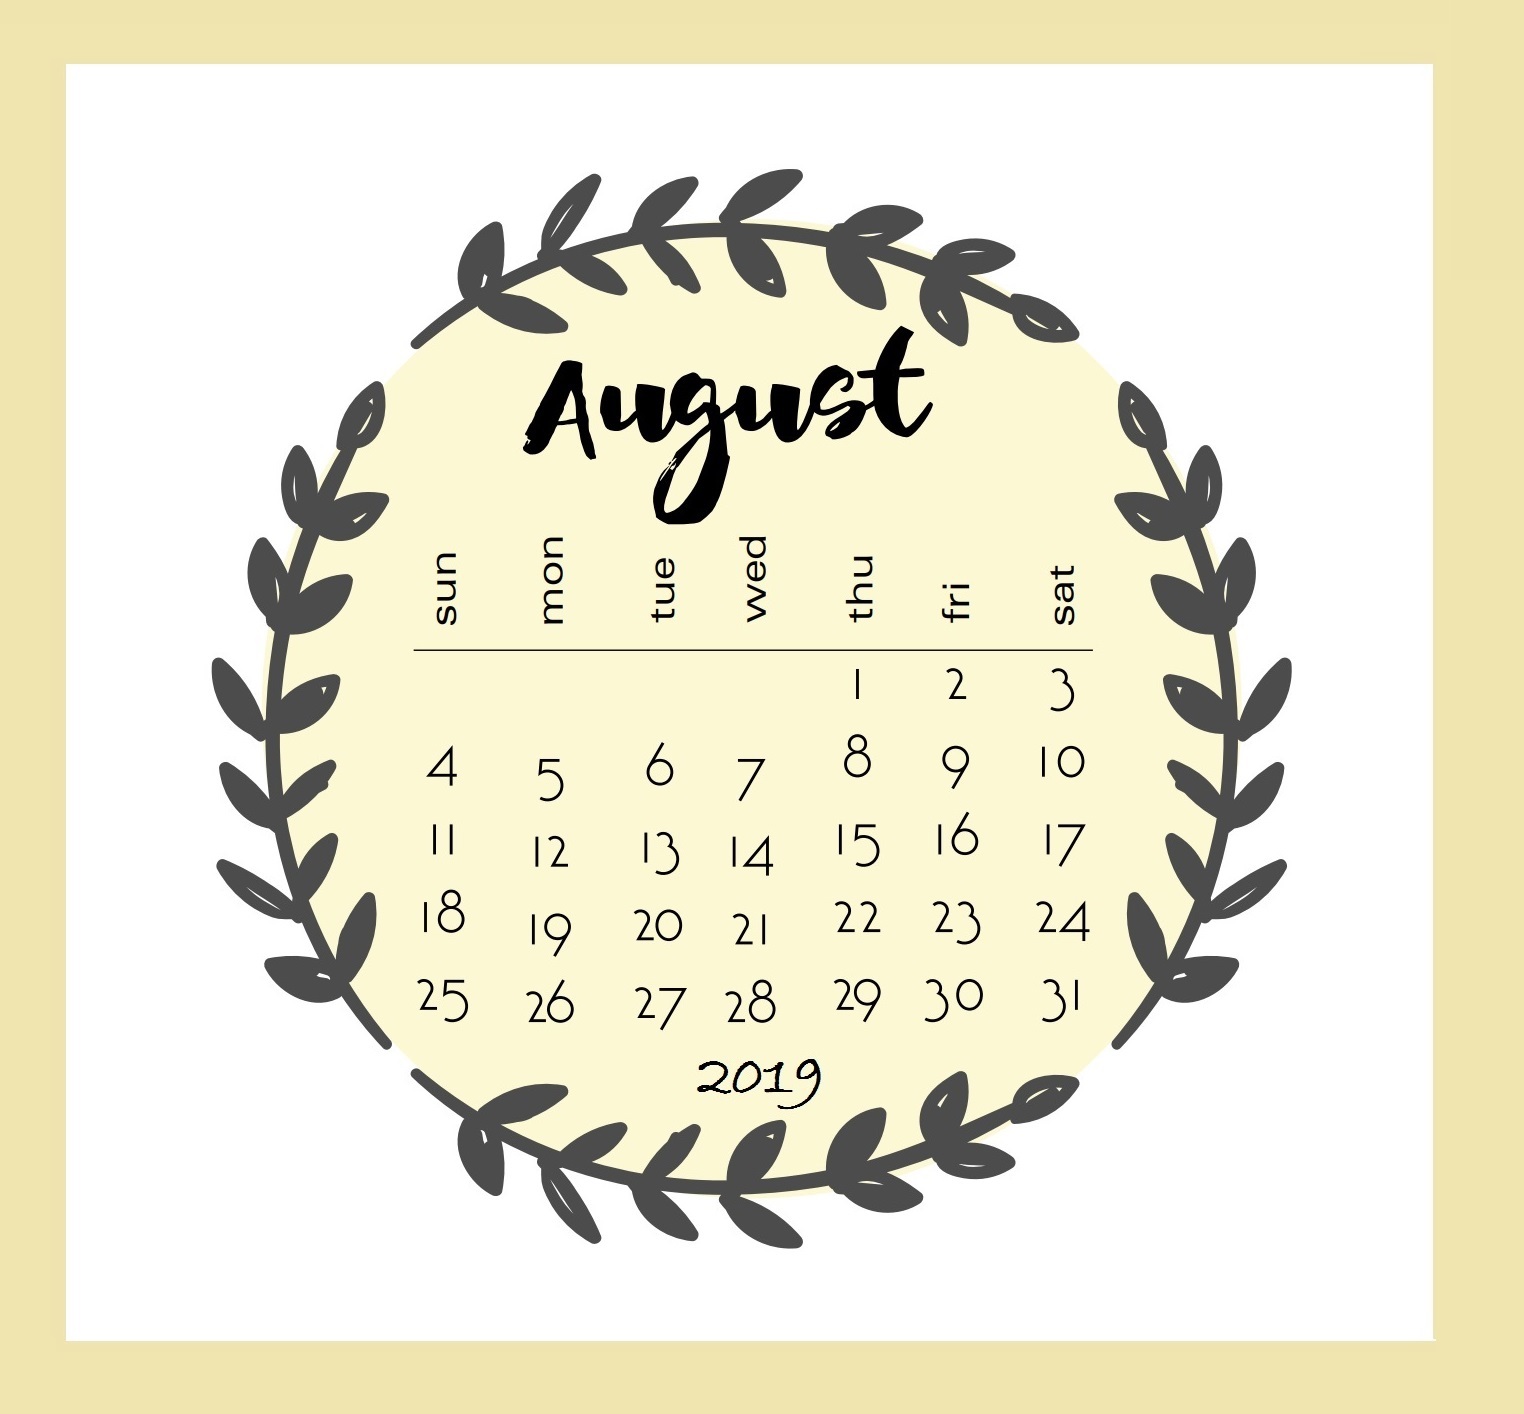 August Calendar 2019